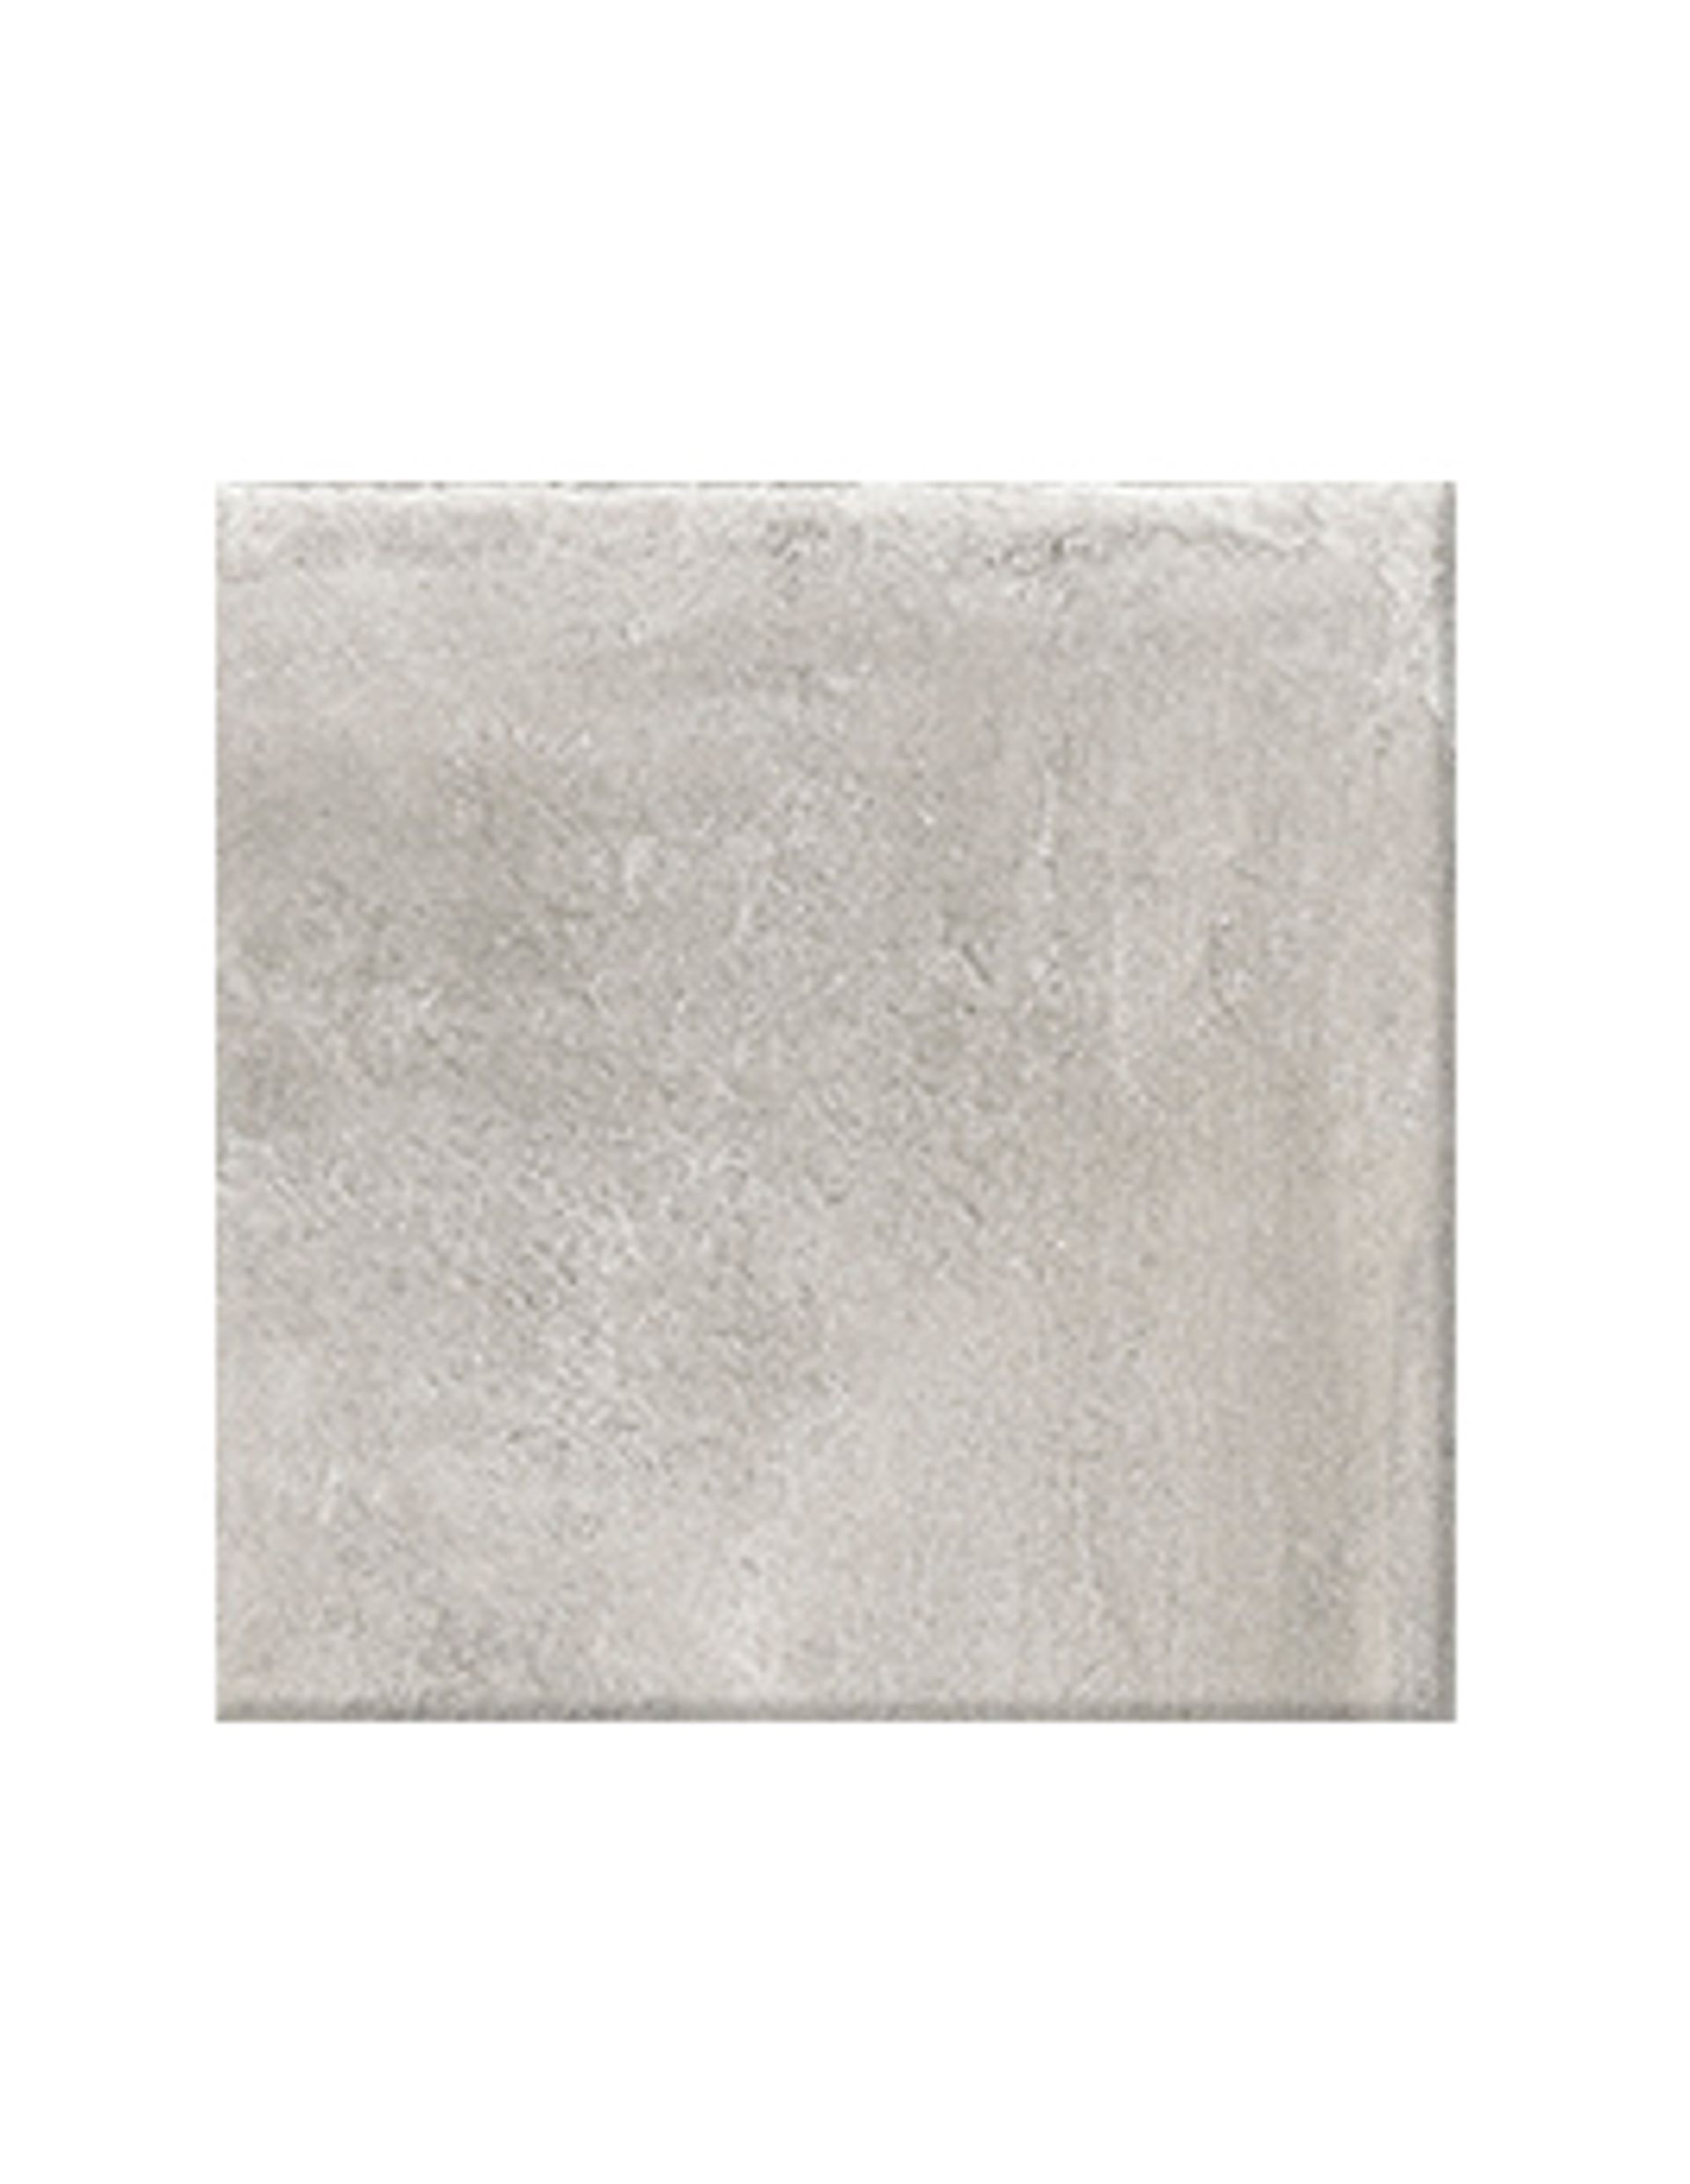 Carrelage NATURE GRIP, aspect pierre gris, dim 50.00 x 50.00 cm